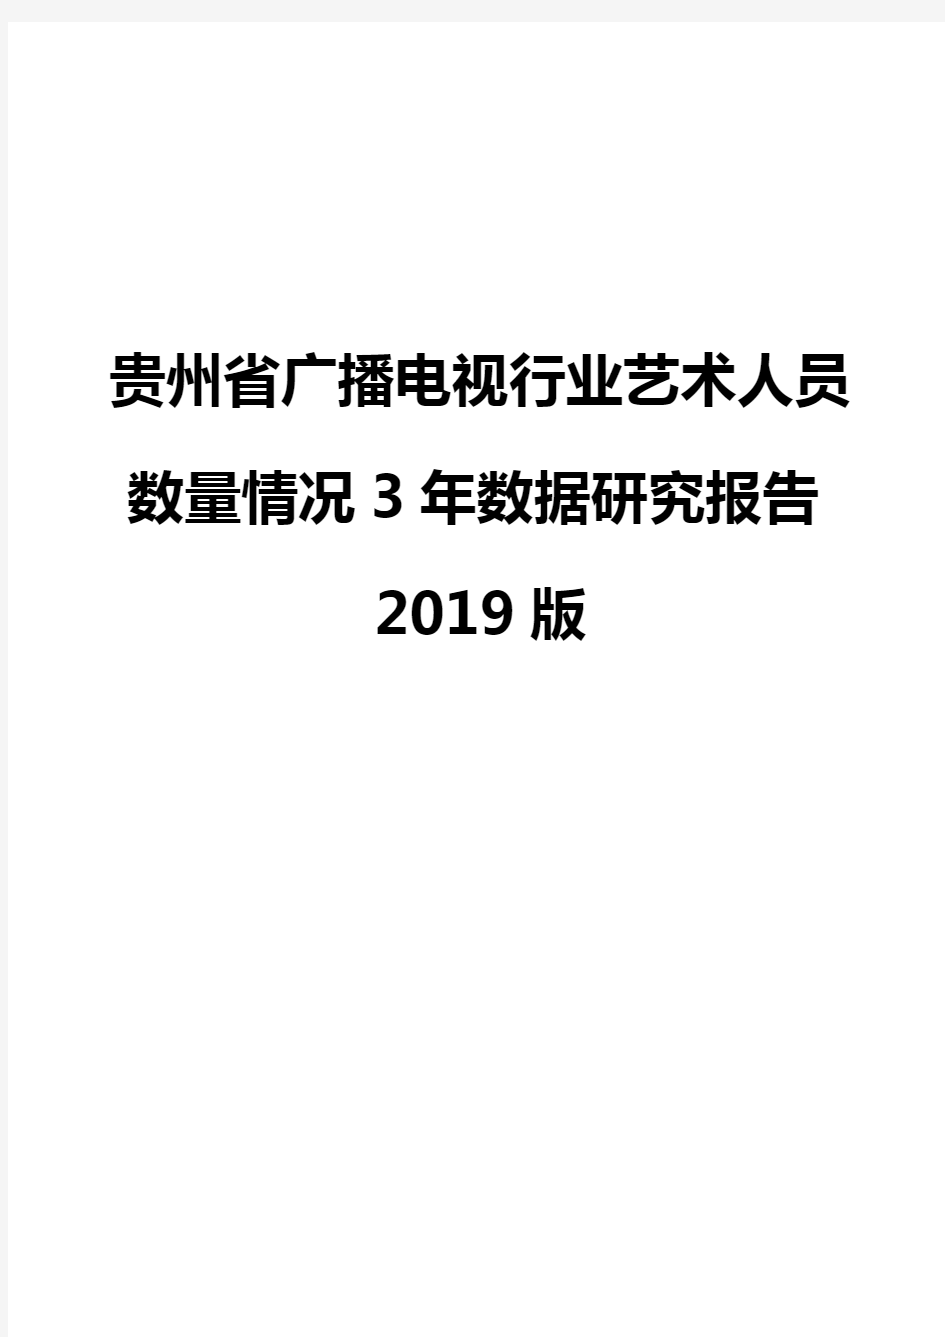 贵州省广播电视行业艺术人员数量情况3年数据研究报告2019版